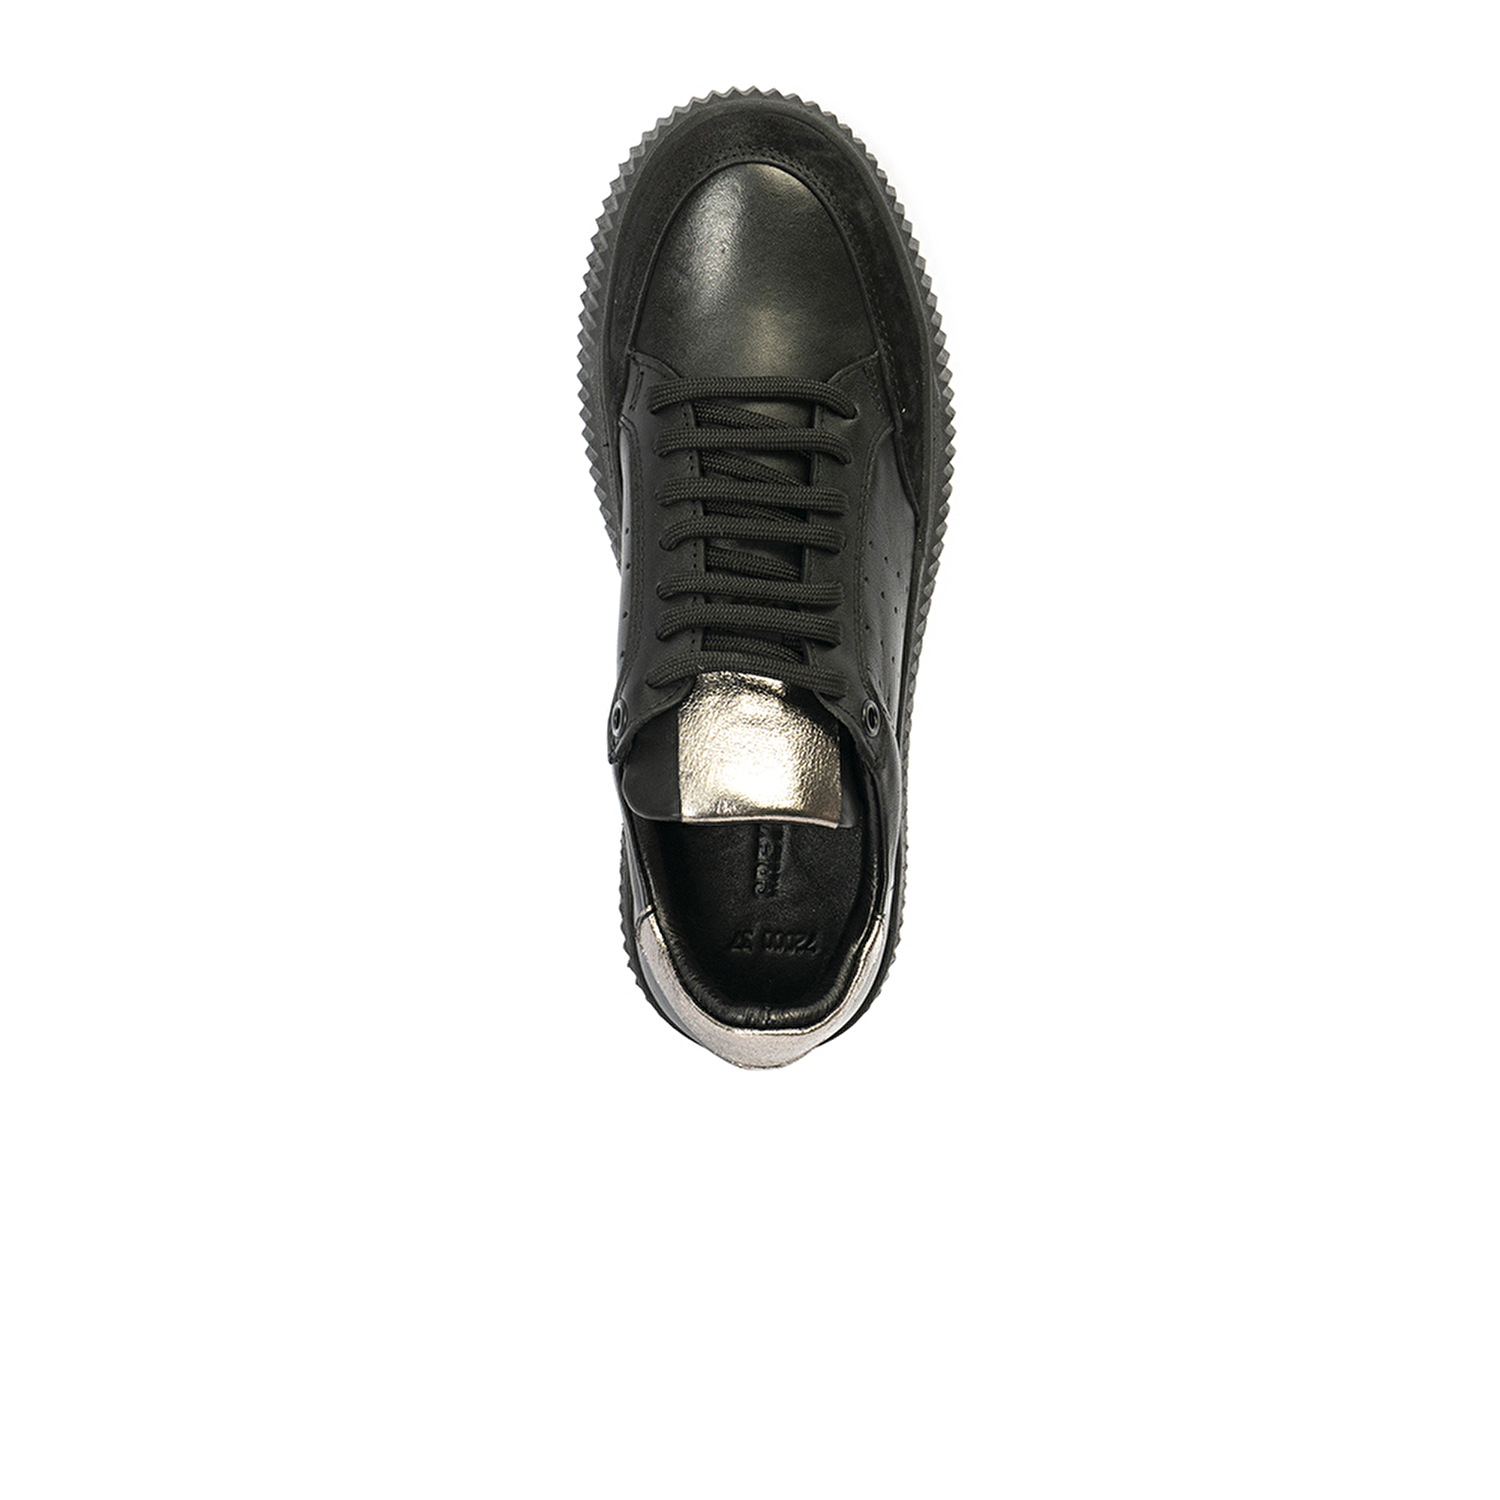 Kadın Siyah Hakiki Deri Sneaker Ayakkabı 2K2SA72000-3